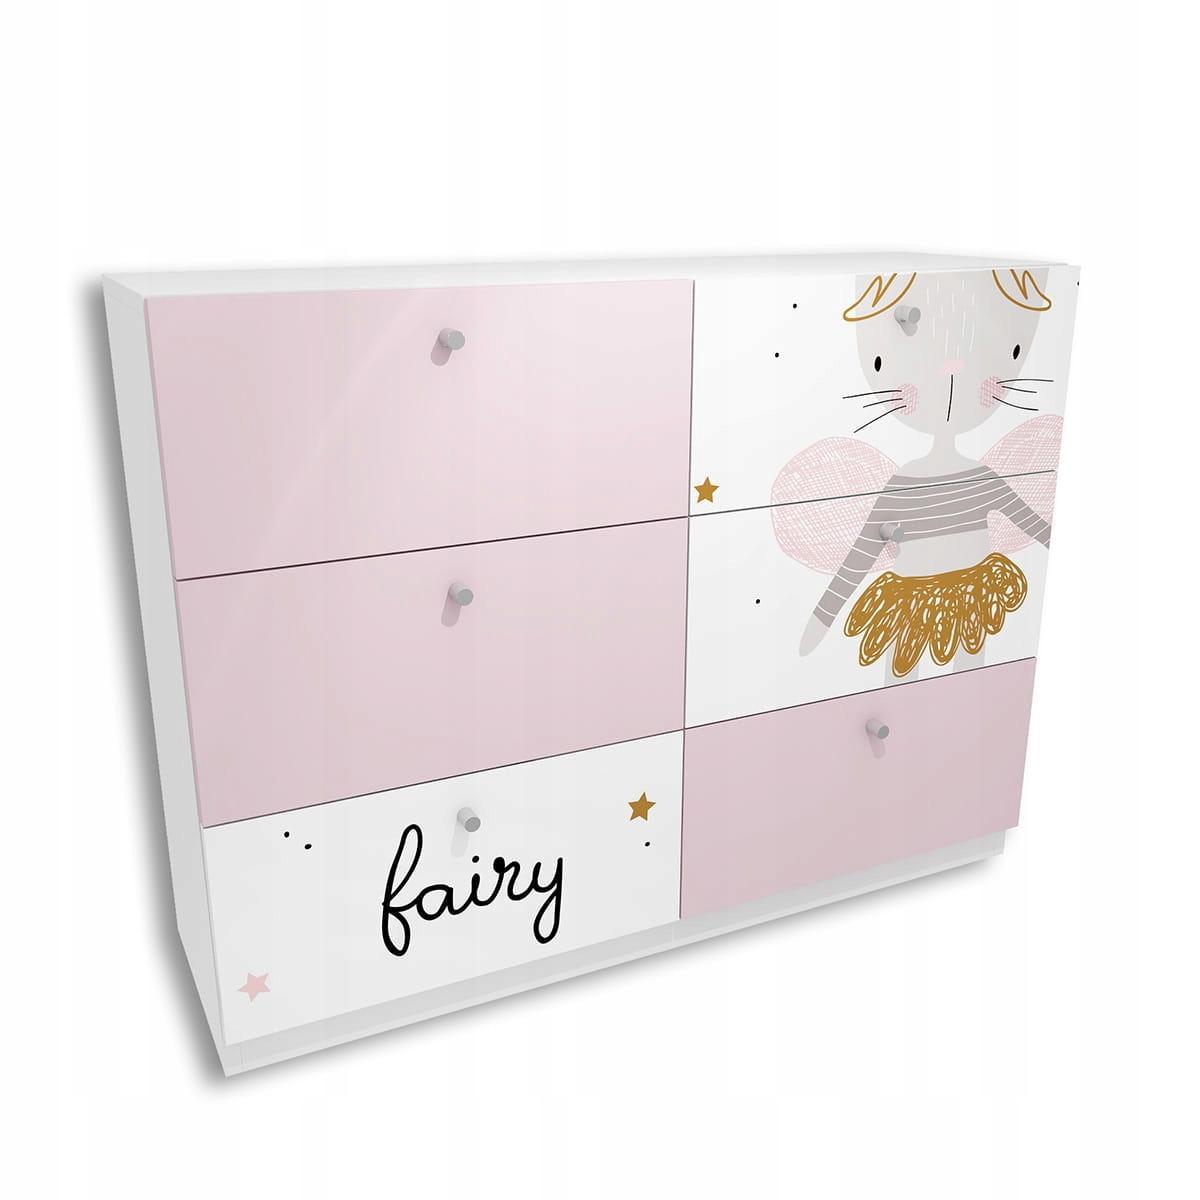 Komoda FAIRY 120x90 cm biało różowa księżniczka dla dziecka  0 Full Screen